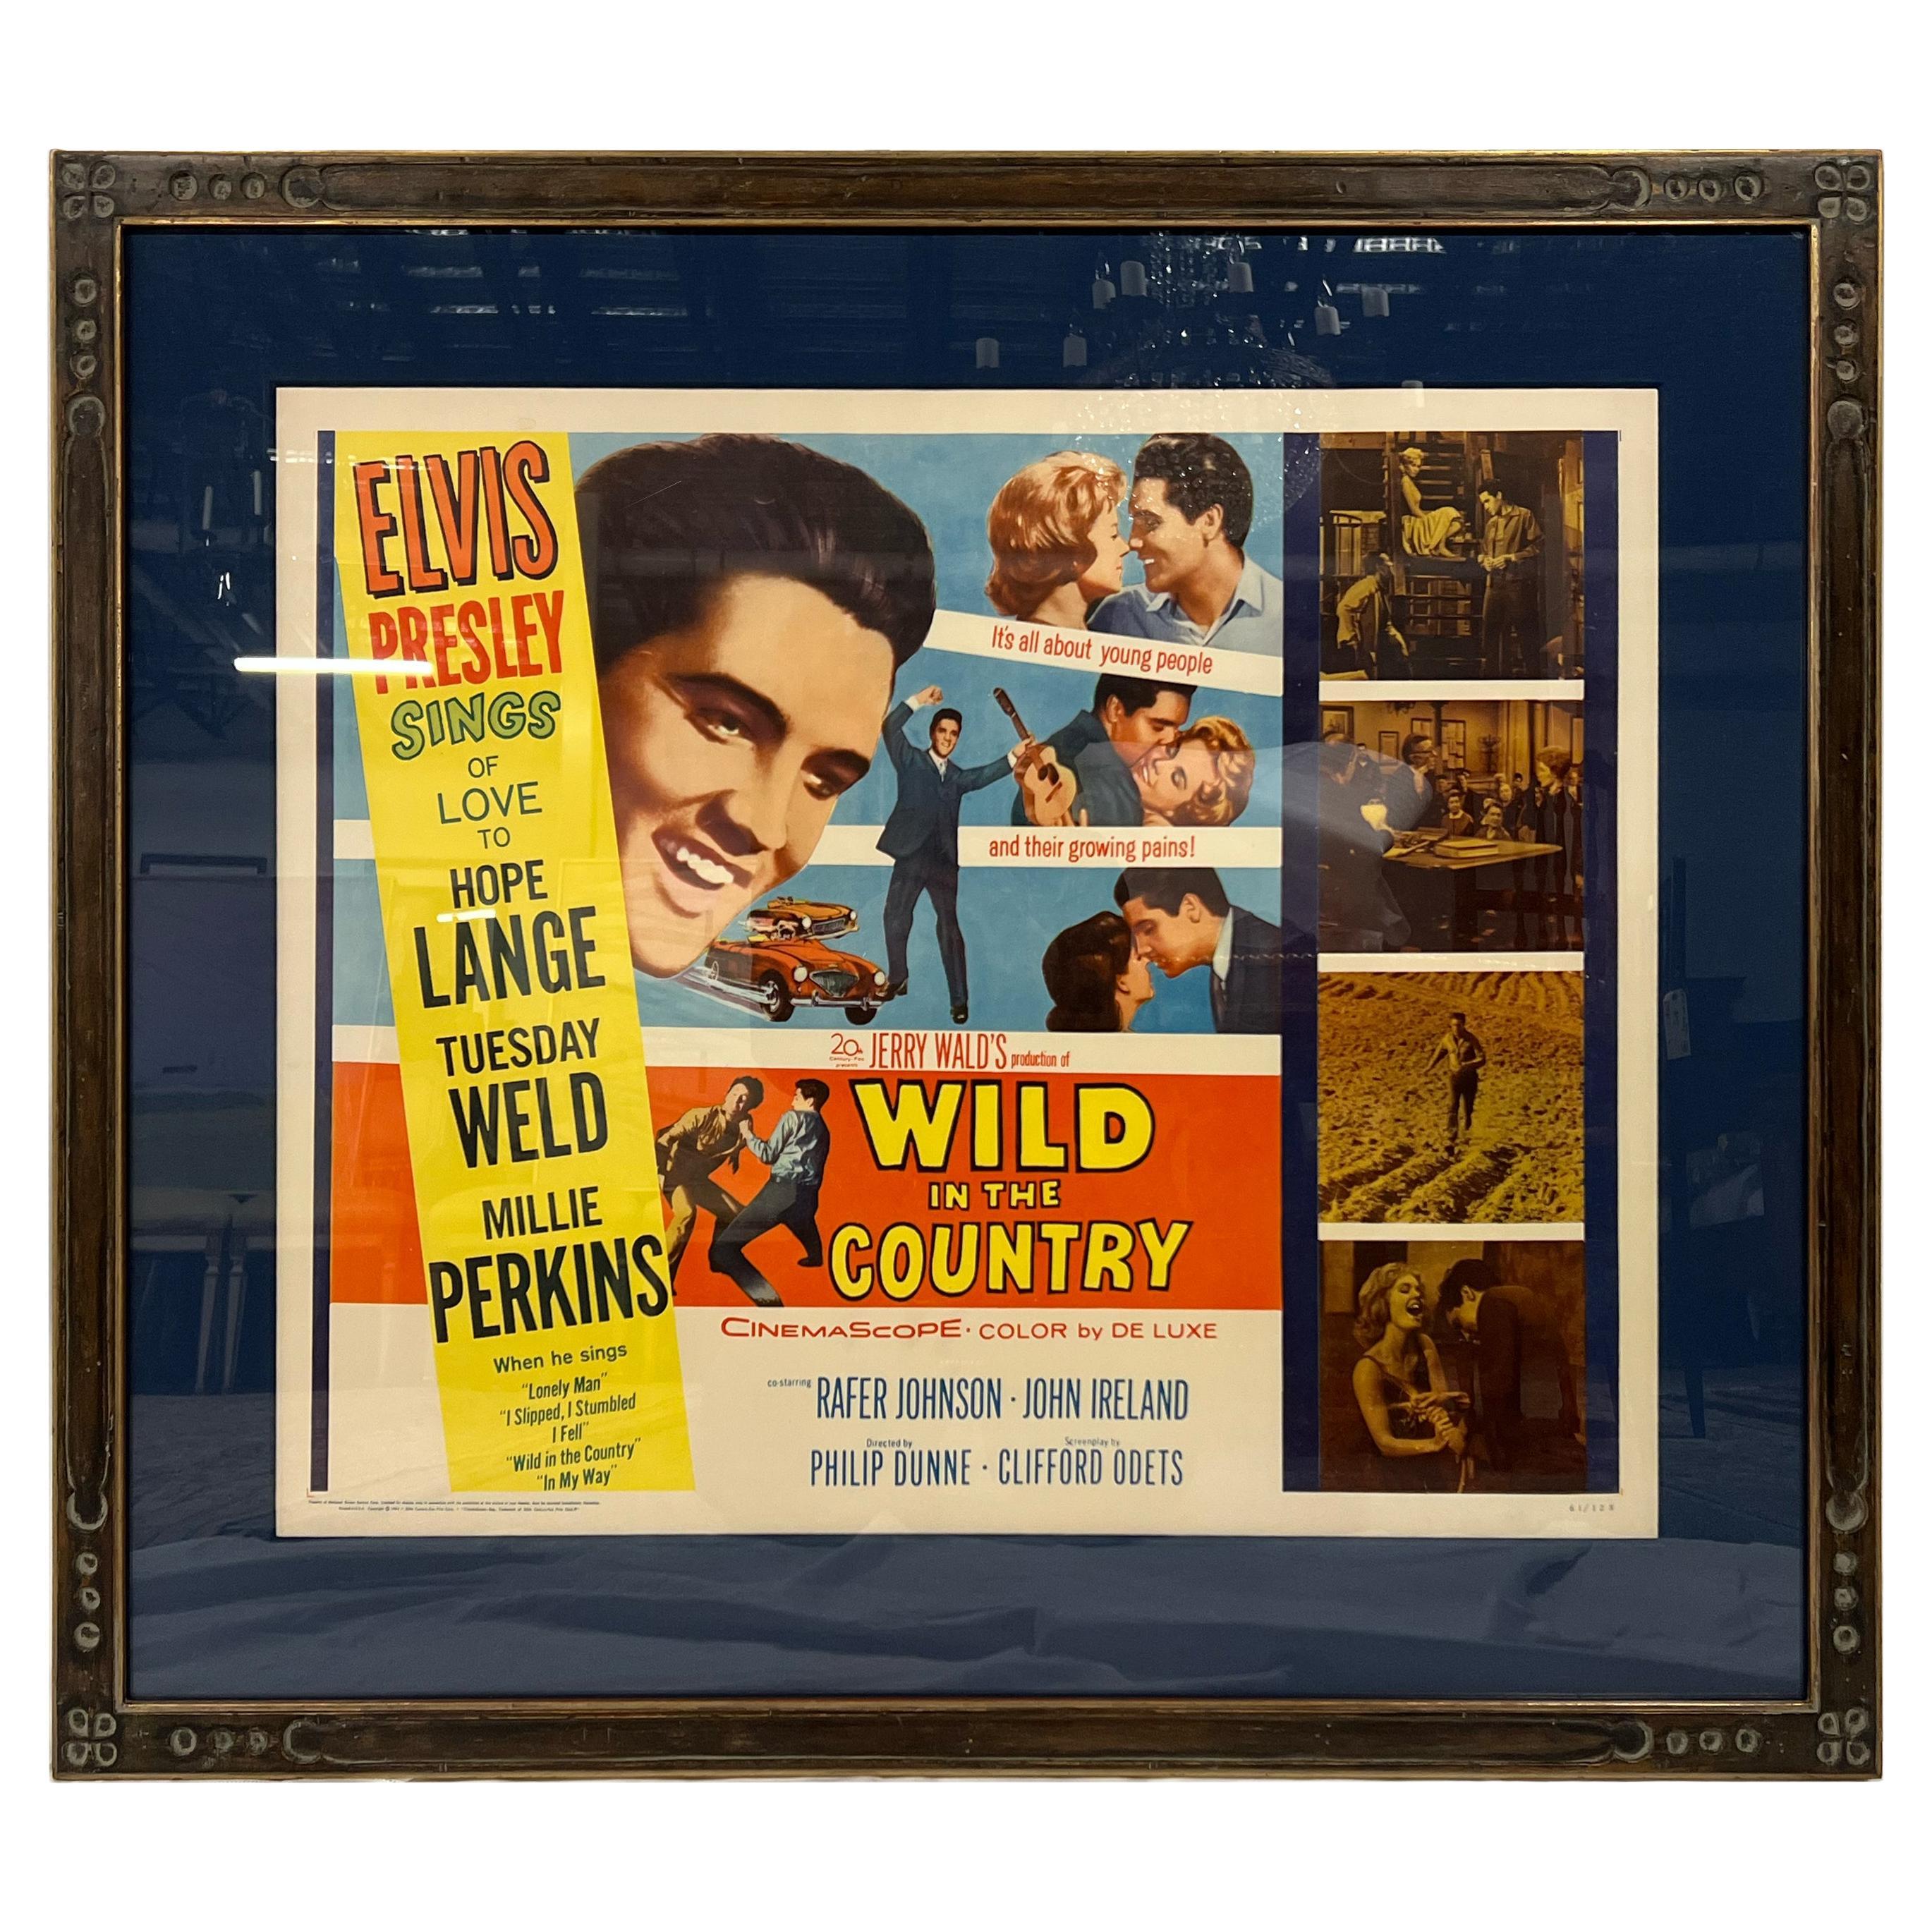  Framed, Original Vintage "Elvis Presley, Wild in the Country" Poster